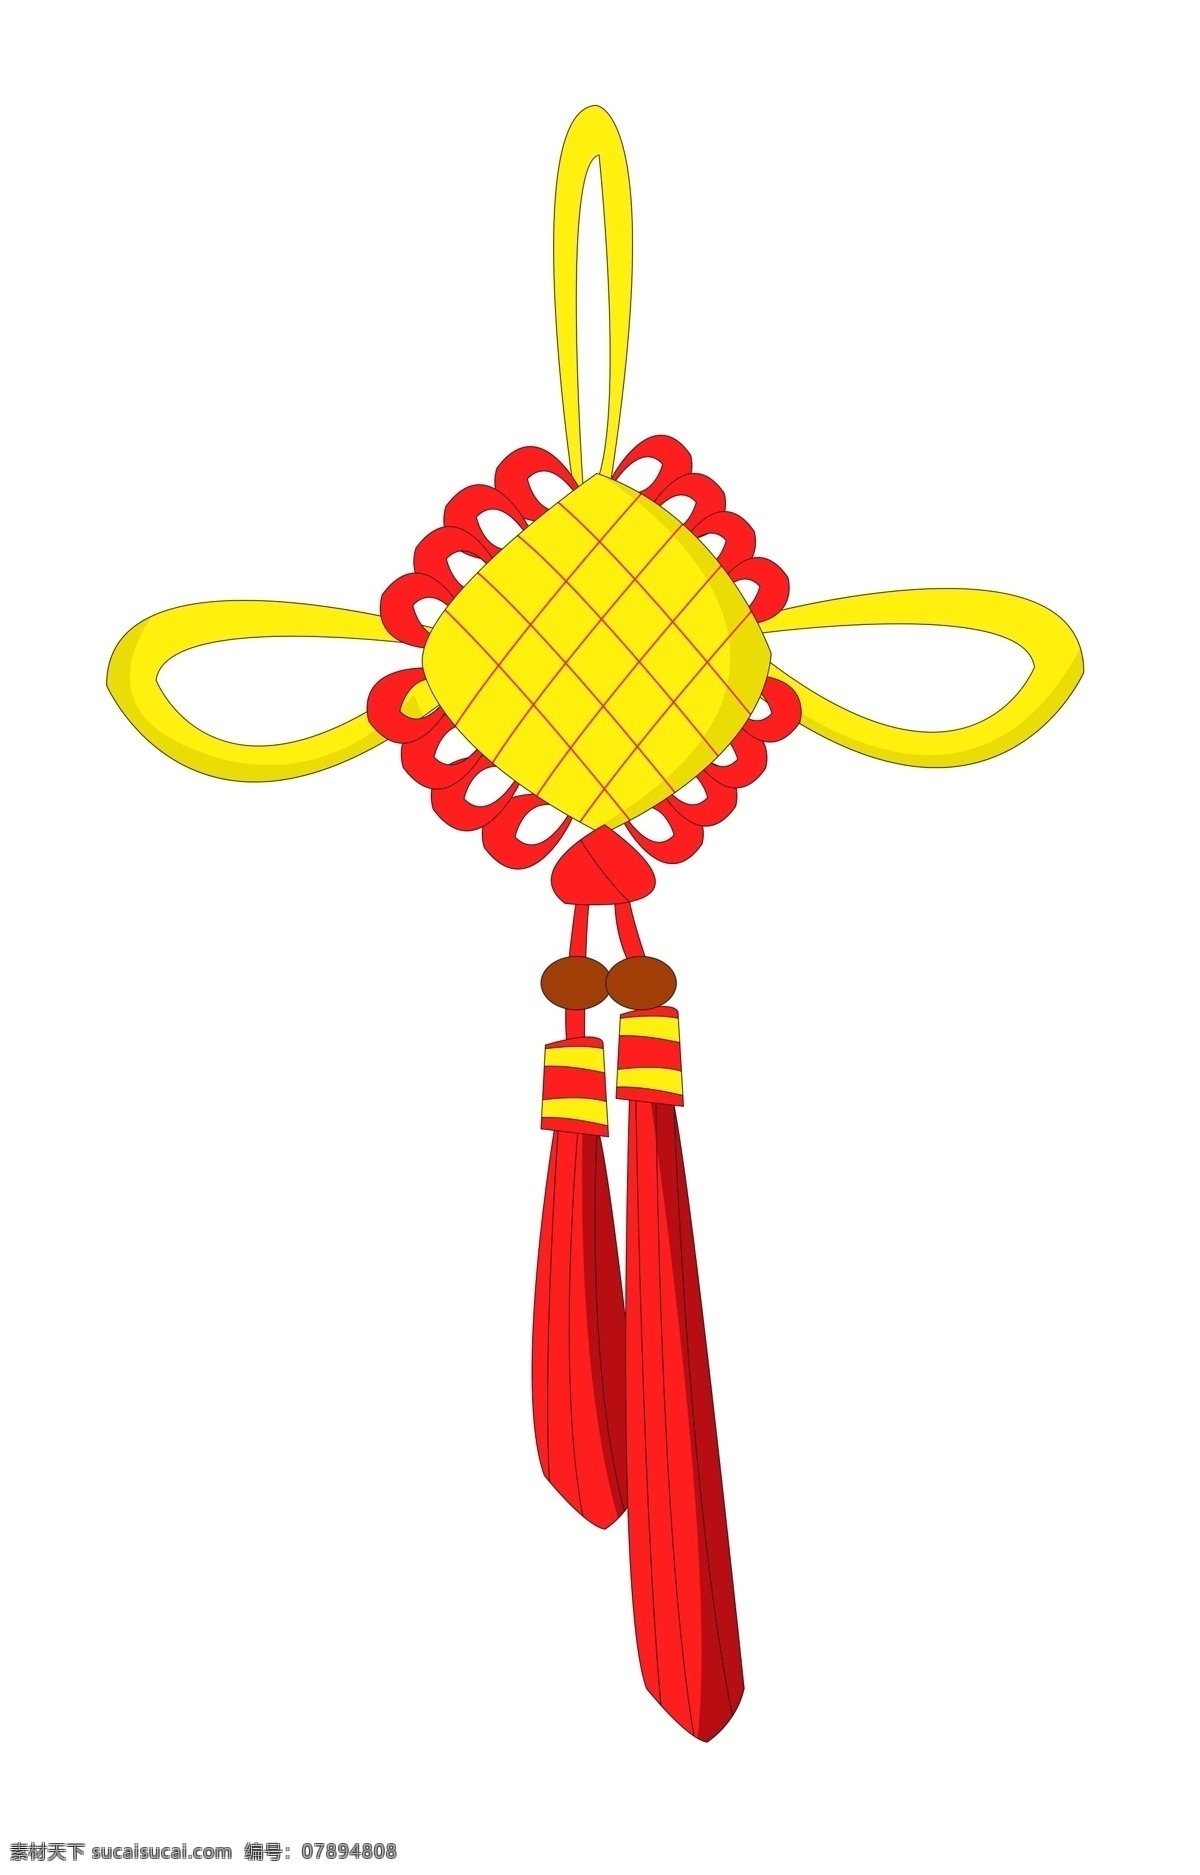 新年 黄色 中国结 插画 新年中国结 红色的吊穗 黄色的中国结 中国结插画 中国结挂饰 手绘中国结